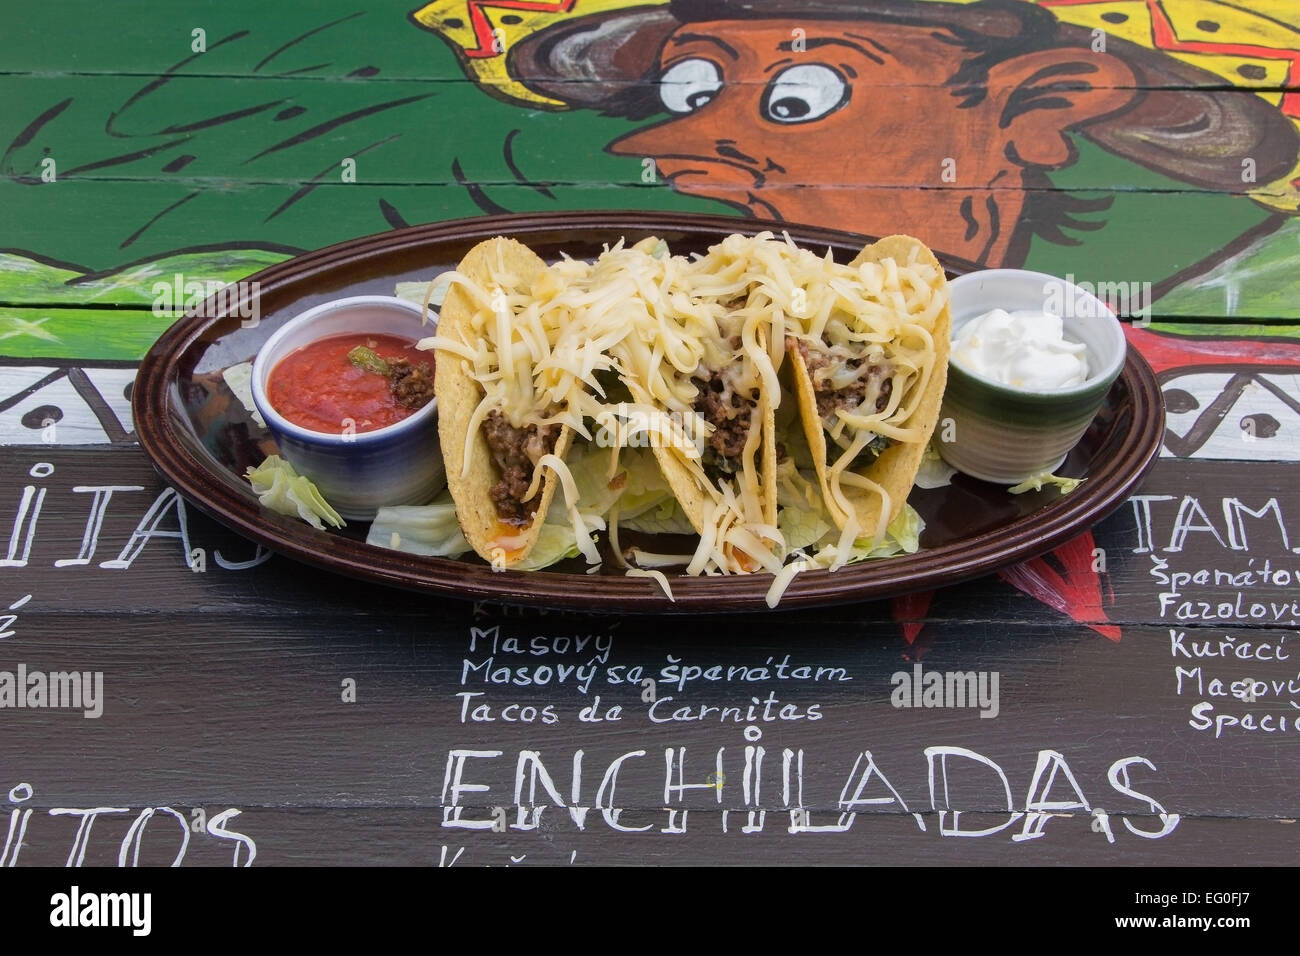 Mexikanisches Essen, Tacos, am schön gedeckten Tisch serviert. Stockfoto